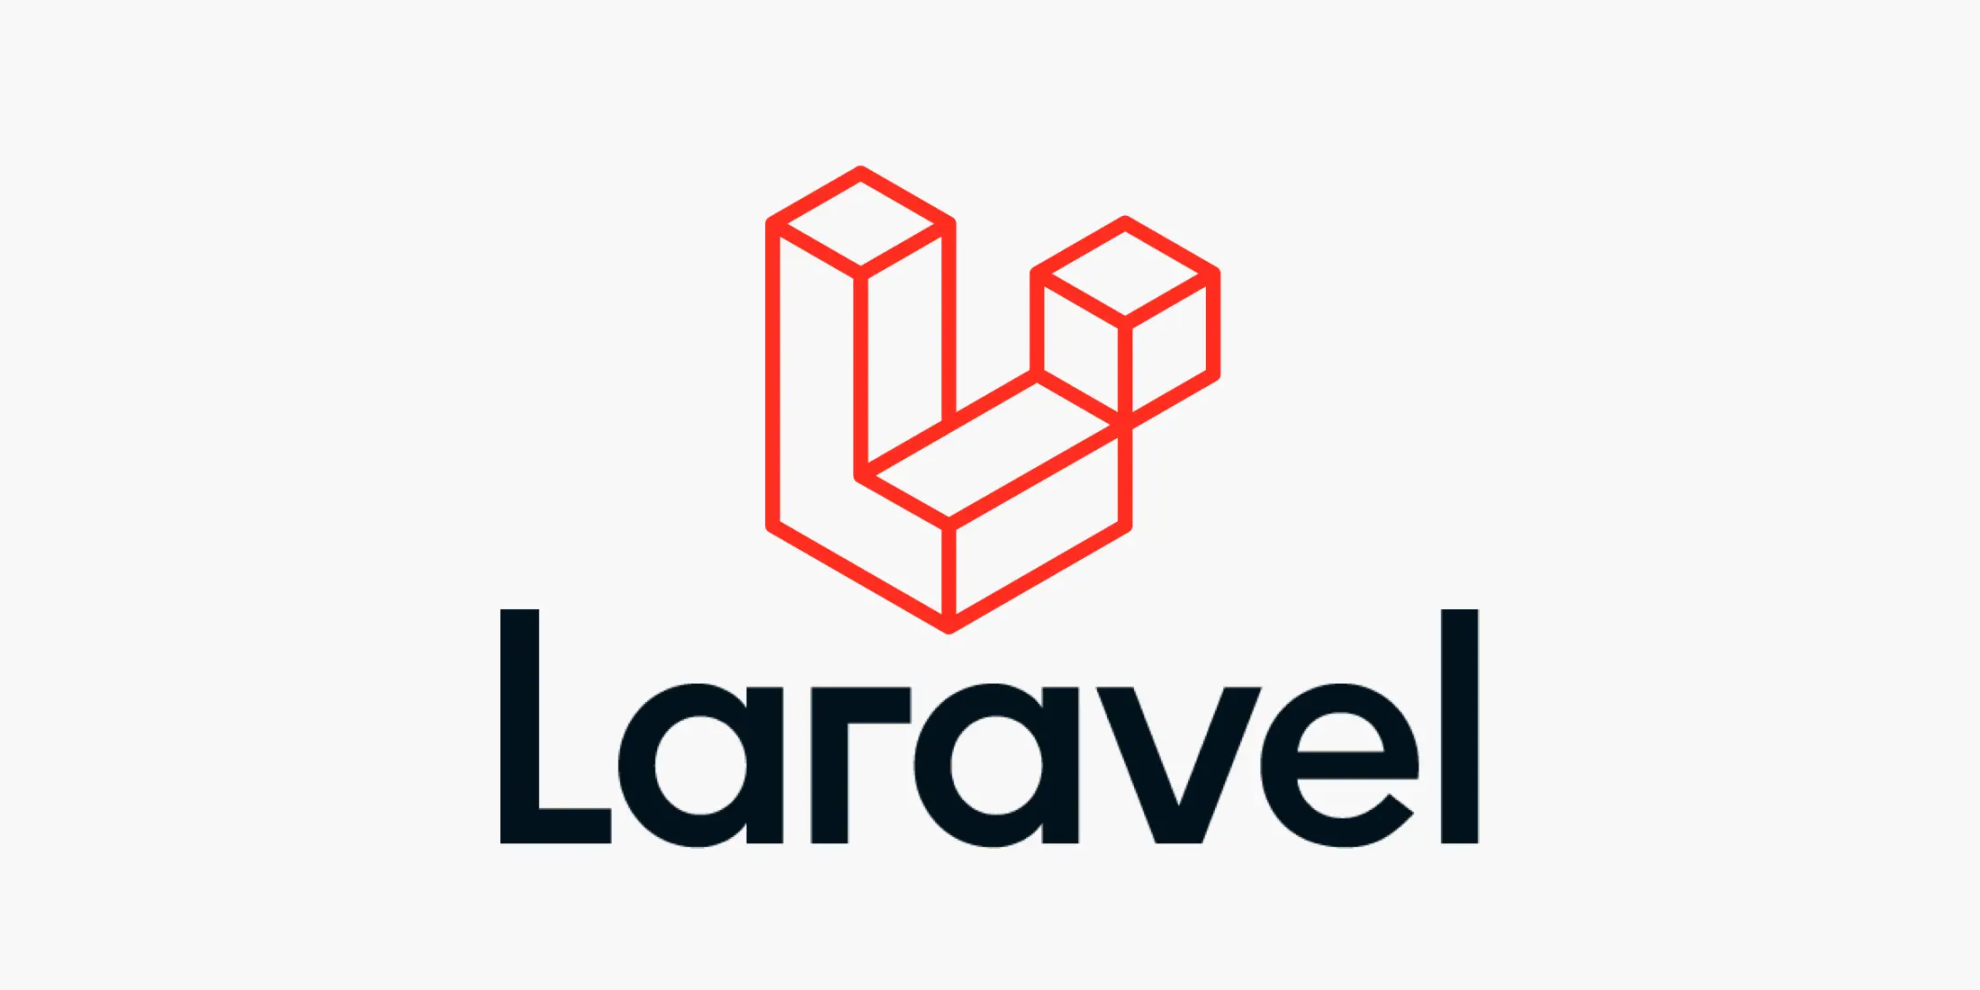 What is Laravel? - Laravel News